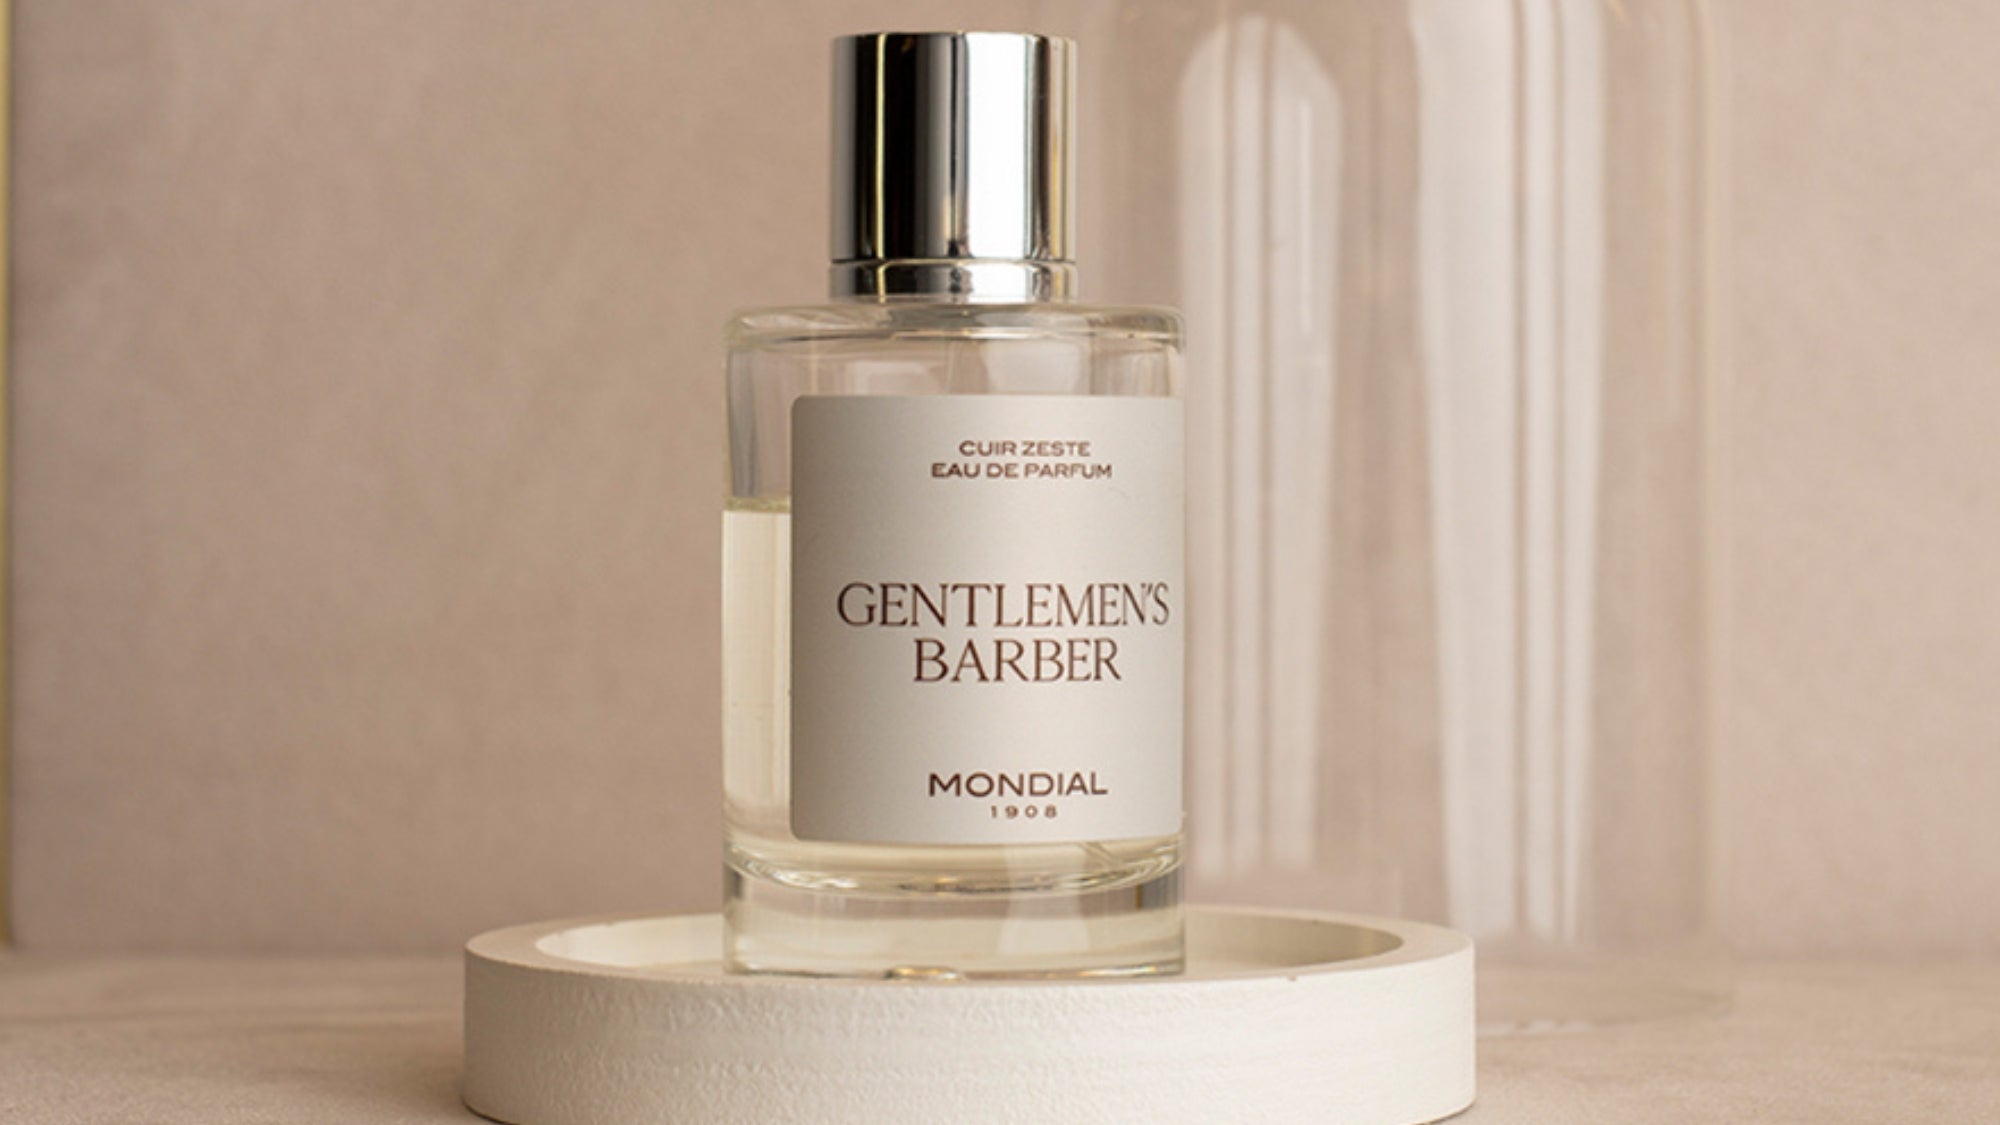 The Gentlemen's Barber Collection